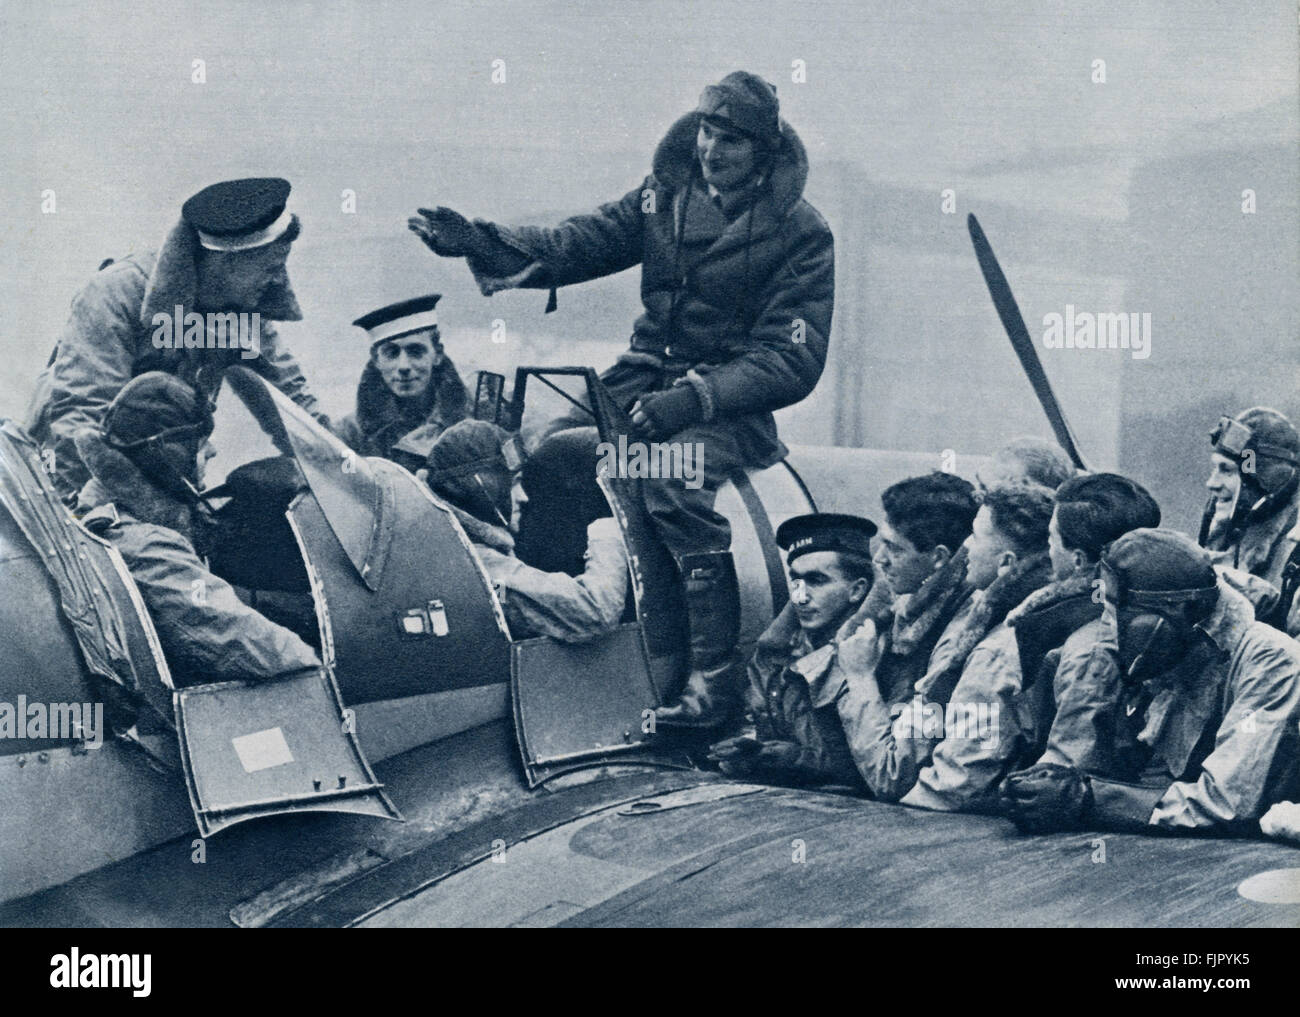 Les cadets de l'air ,c. 1940. La DEUXIÈME GUERRE MONDIALE, à un camp d'entraînement de la force aérienne. Instructeur assis sur le tablier de l'avion de chasse, enseigne de nouvelles Zélande cadets. Banque D'Images